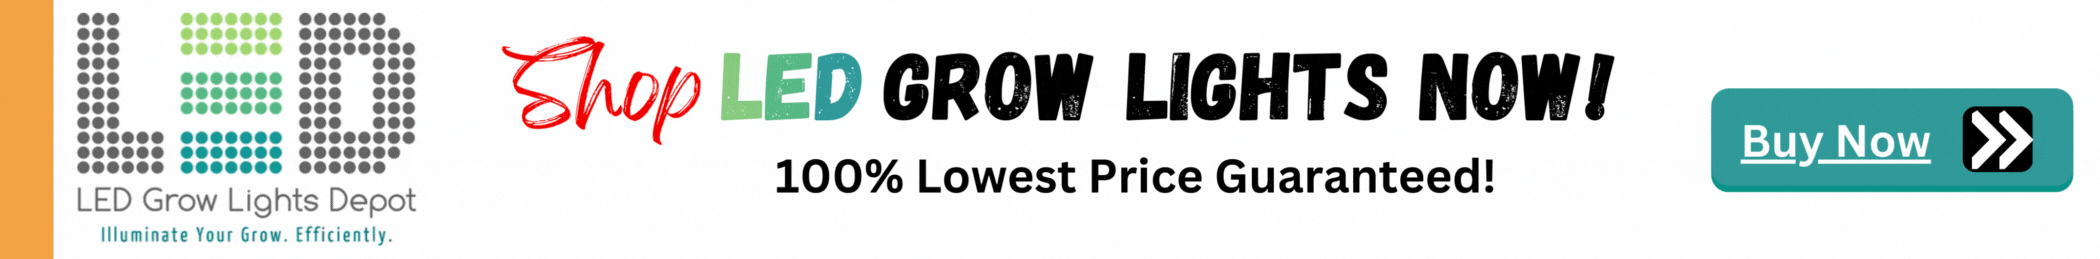 Buy LED Grow Lights NOW 